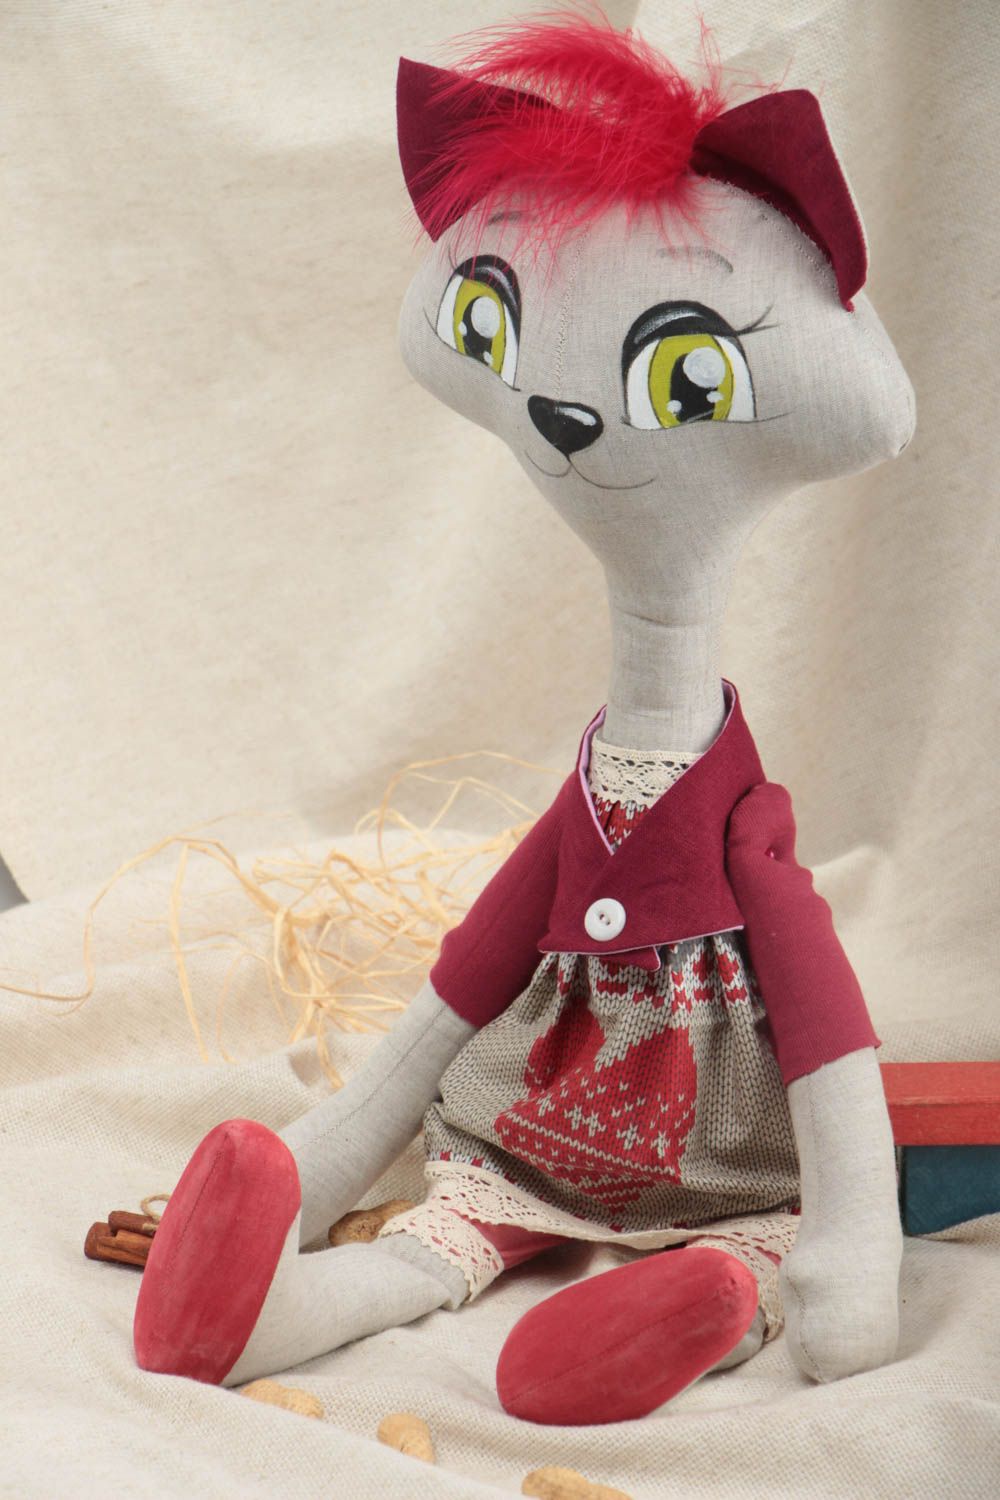 Текстильная игрушка кошка из льна в платье светлая красивая необычная хэнд мейд фото 1